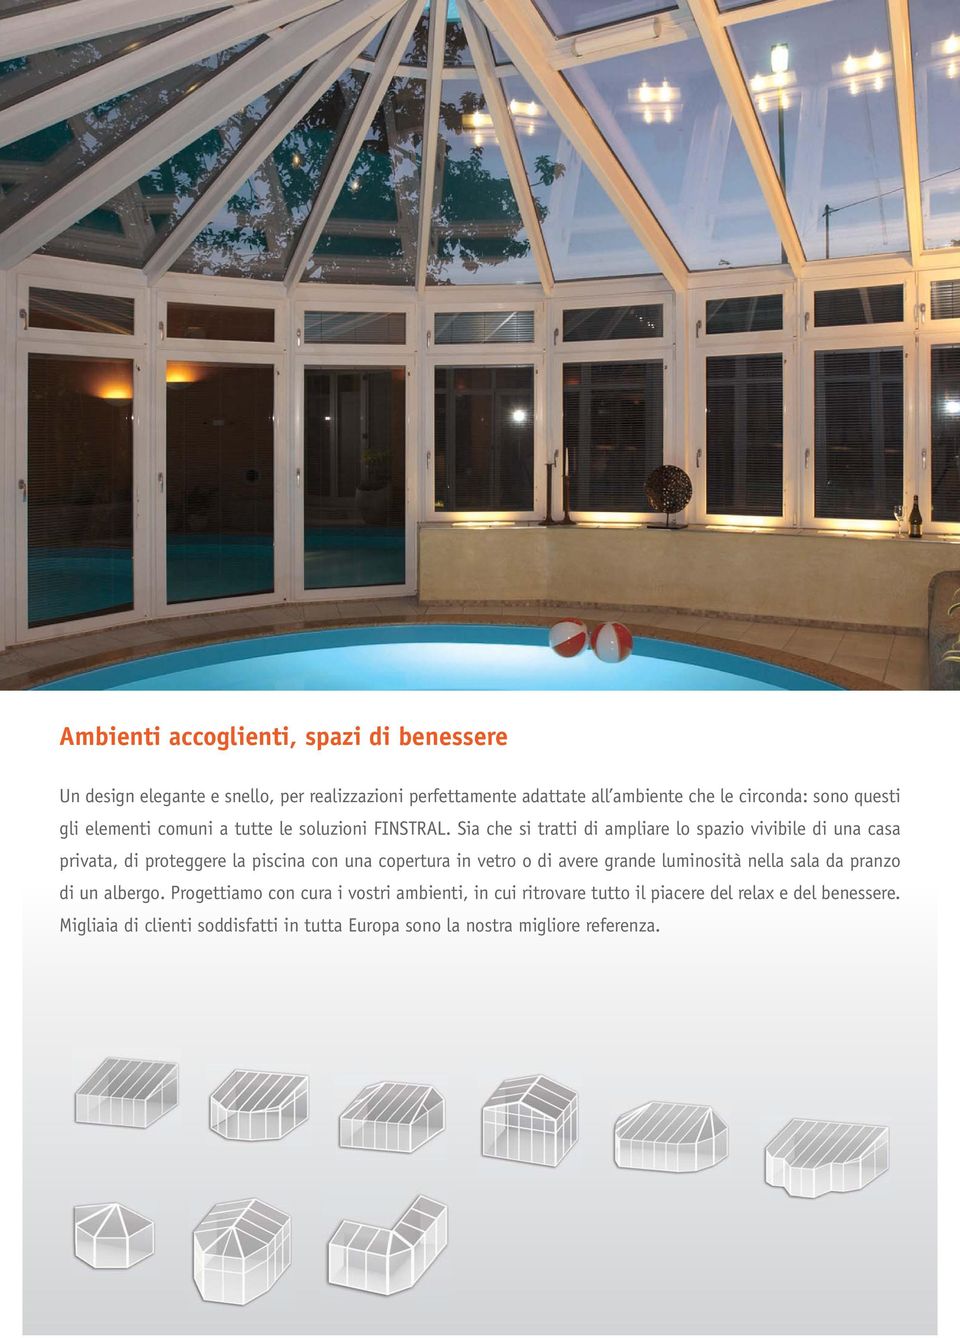 Sia che si tratti di ampliare lo spazio vivibile di una casa privata, di proteggere la piscina con una copertura in vetro o di avere grande